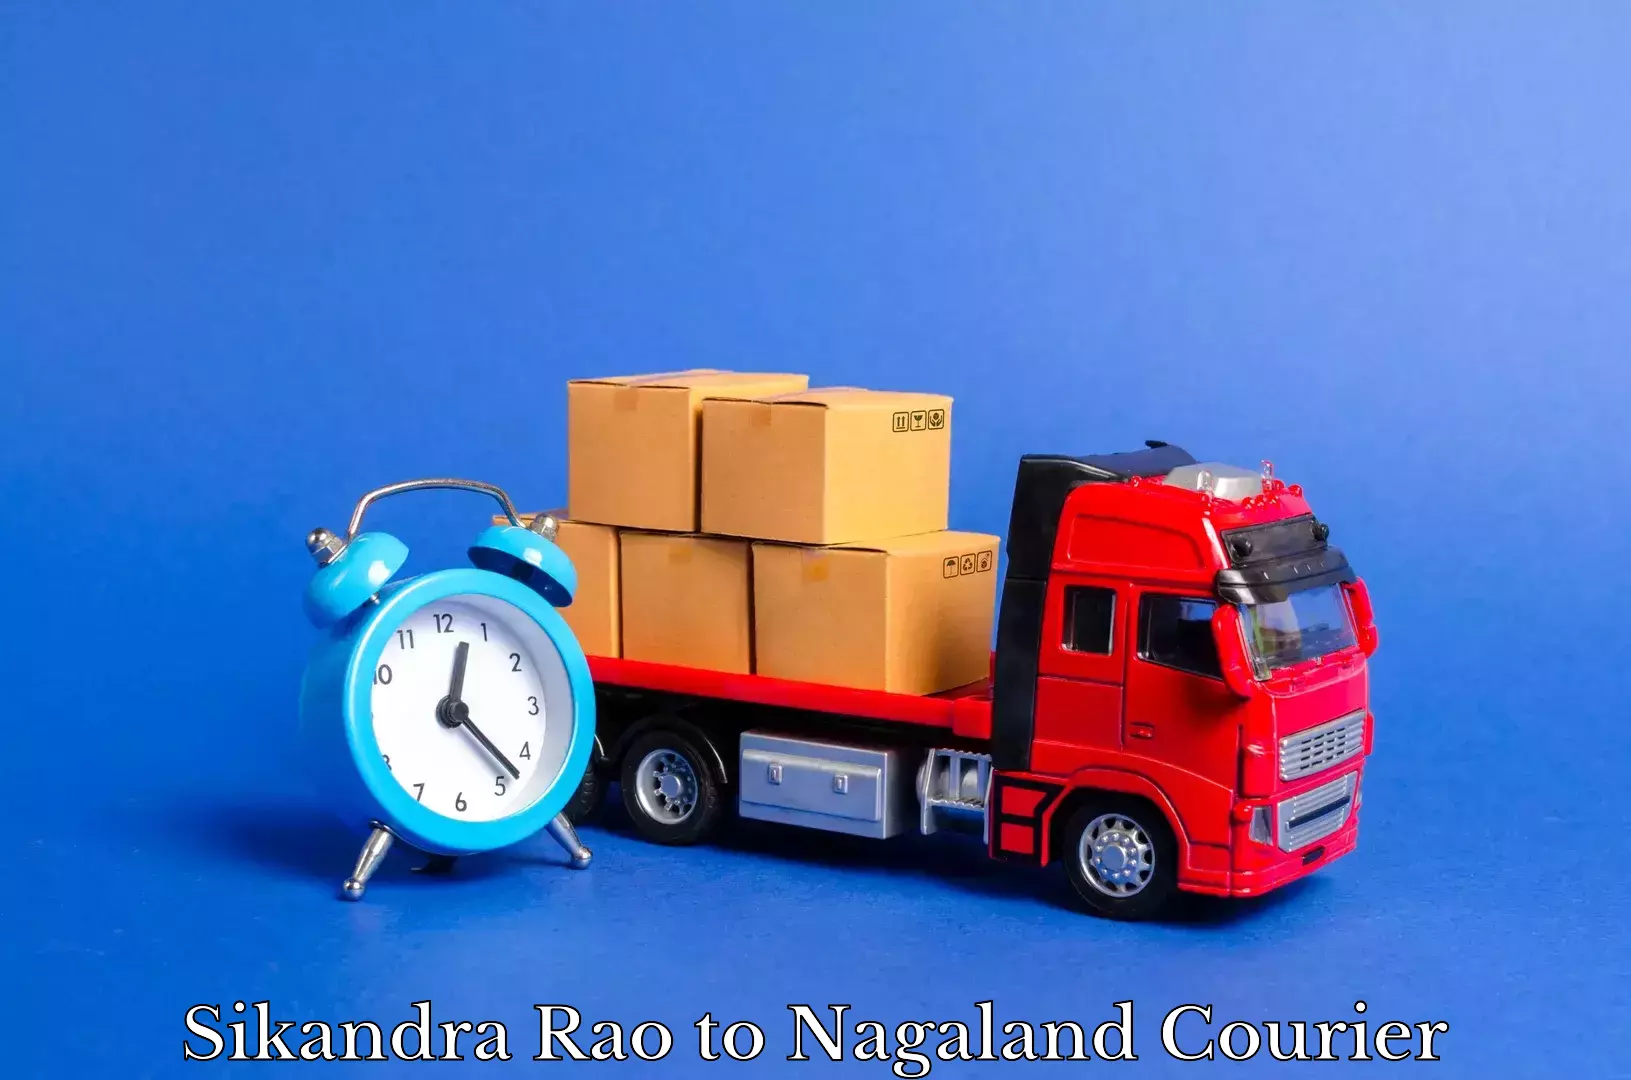 Trusted moving company Sikandra Rao to NIT Nagaland